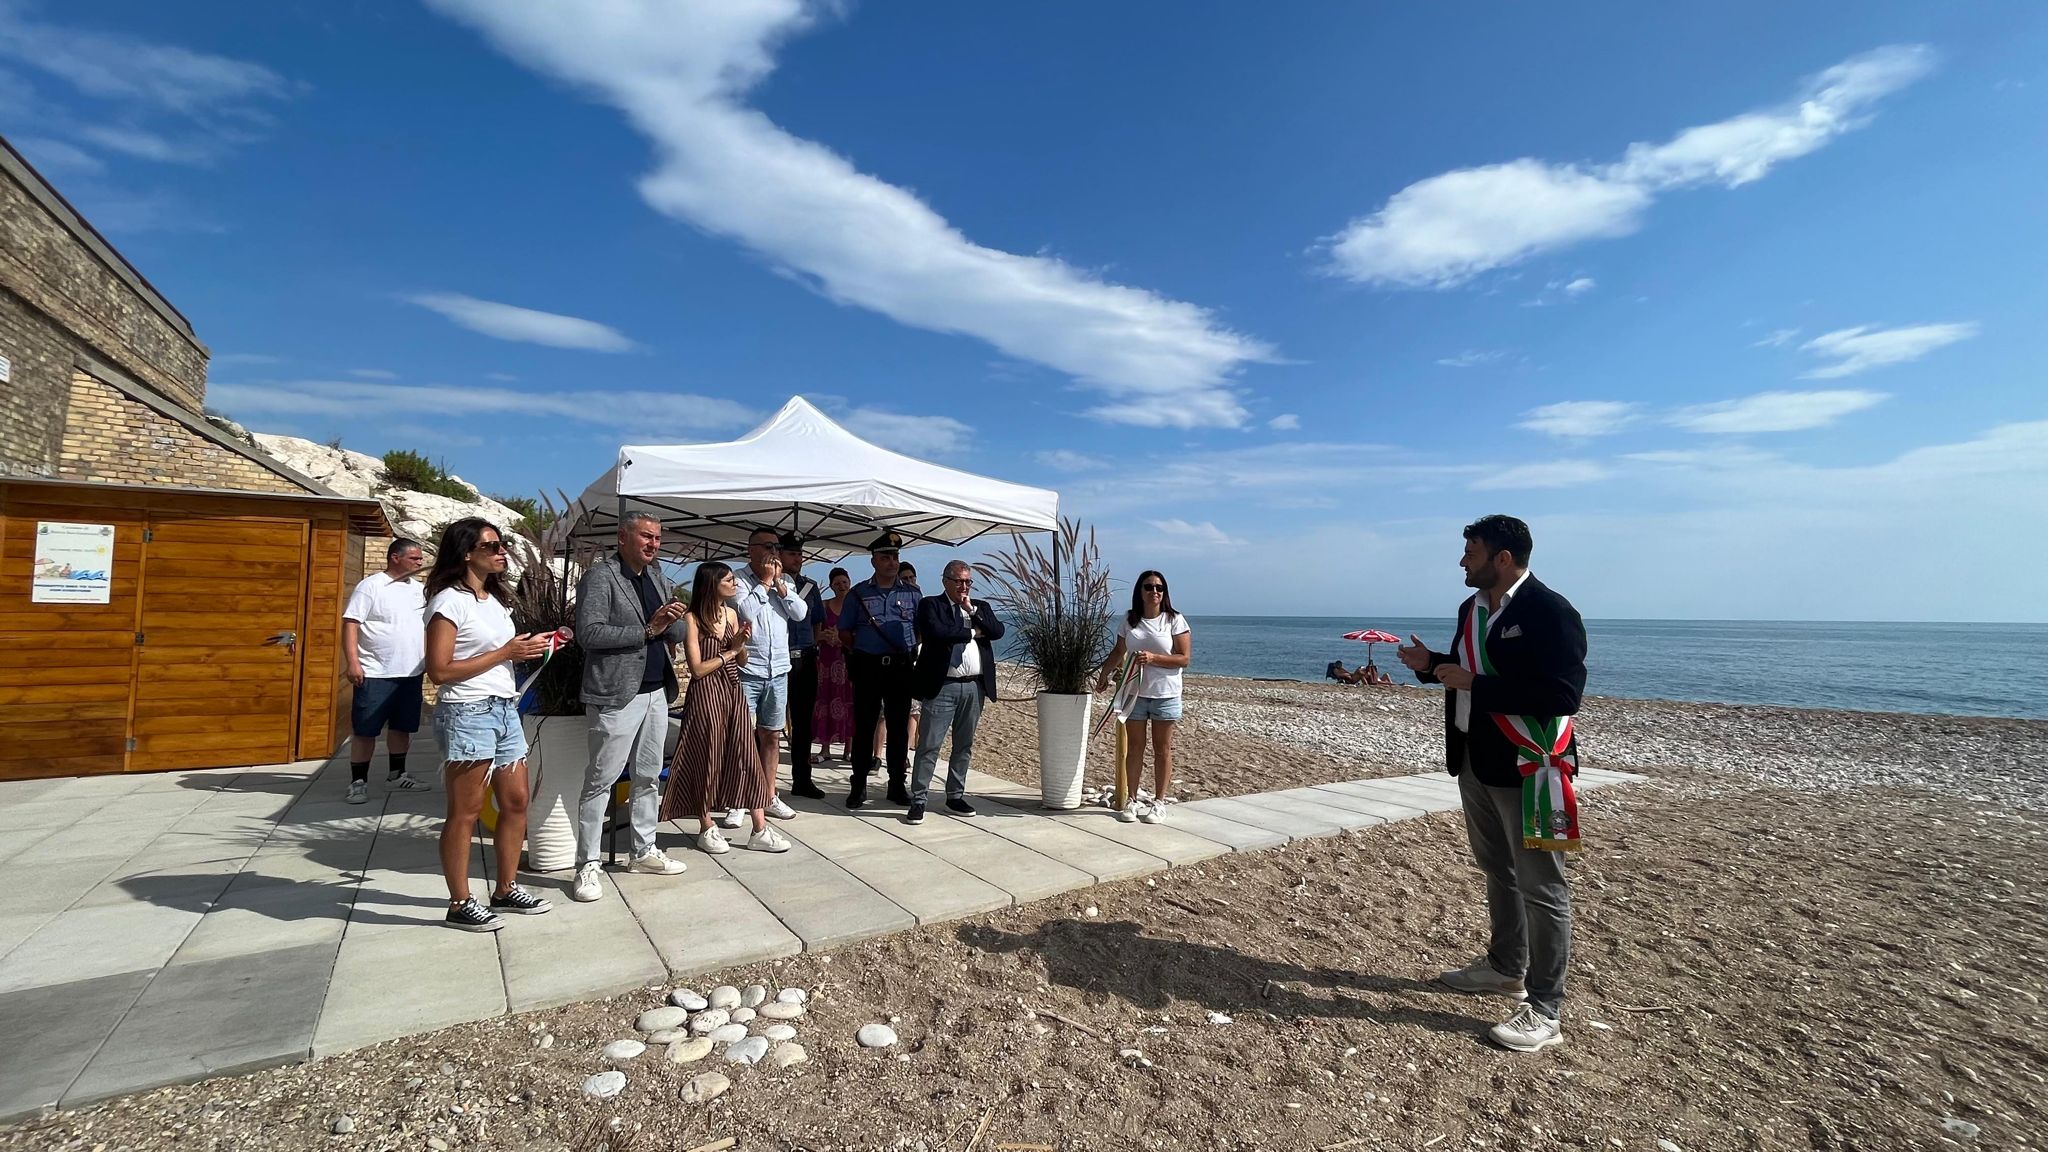 Rocca San Giovanni inaugura la spiaggia accessibile in località La Foce per favorire l'inclusione